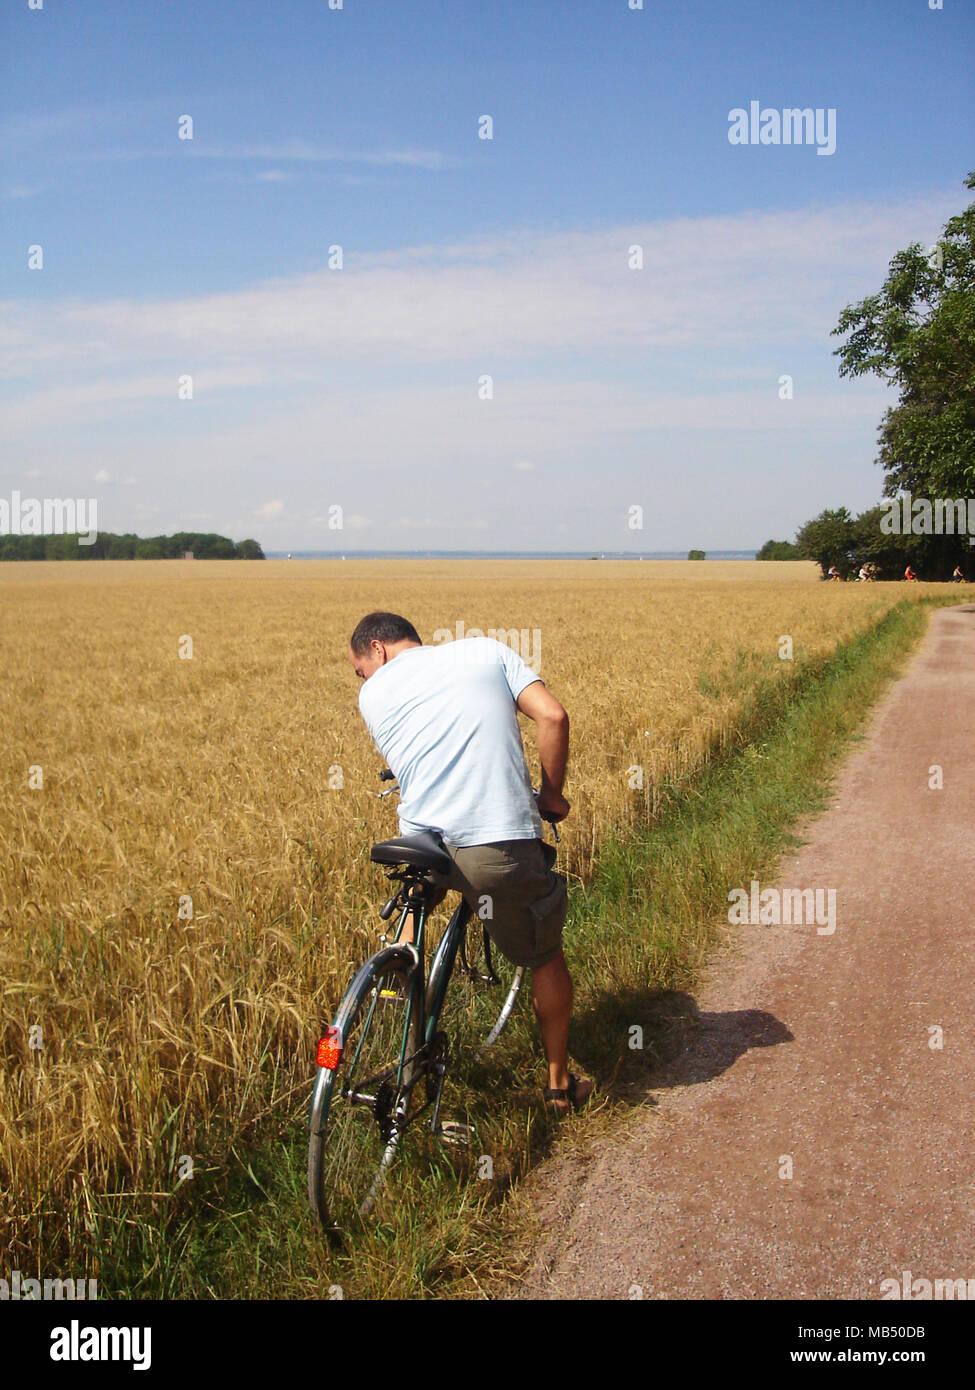 Homme aux cheveux courts avec un vélo à la roue à l'arrière près d'un champ cultivé, jaune, la Suède Île Ven Banque D'Images